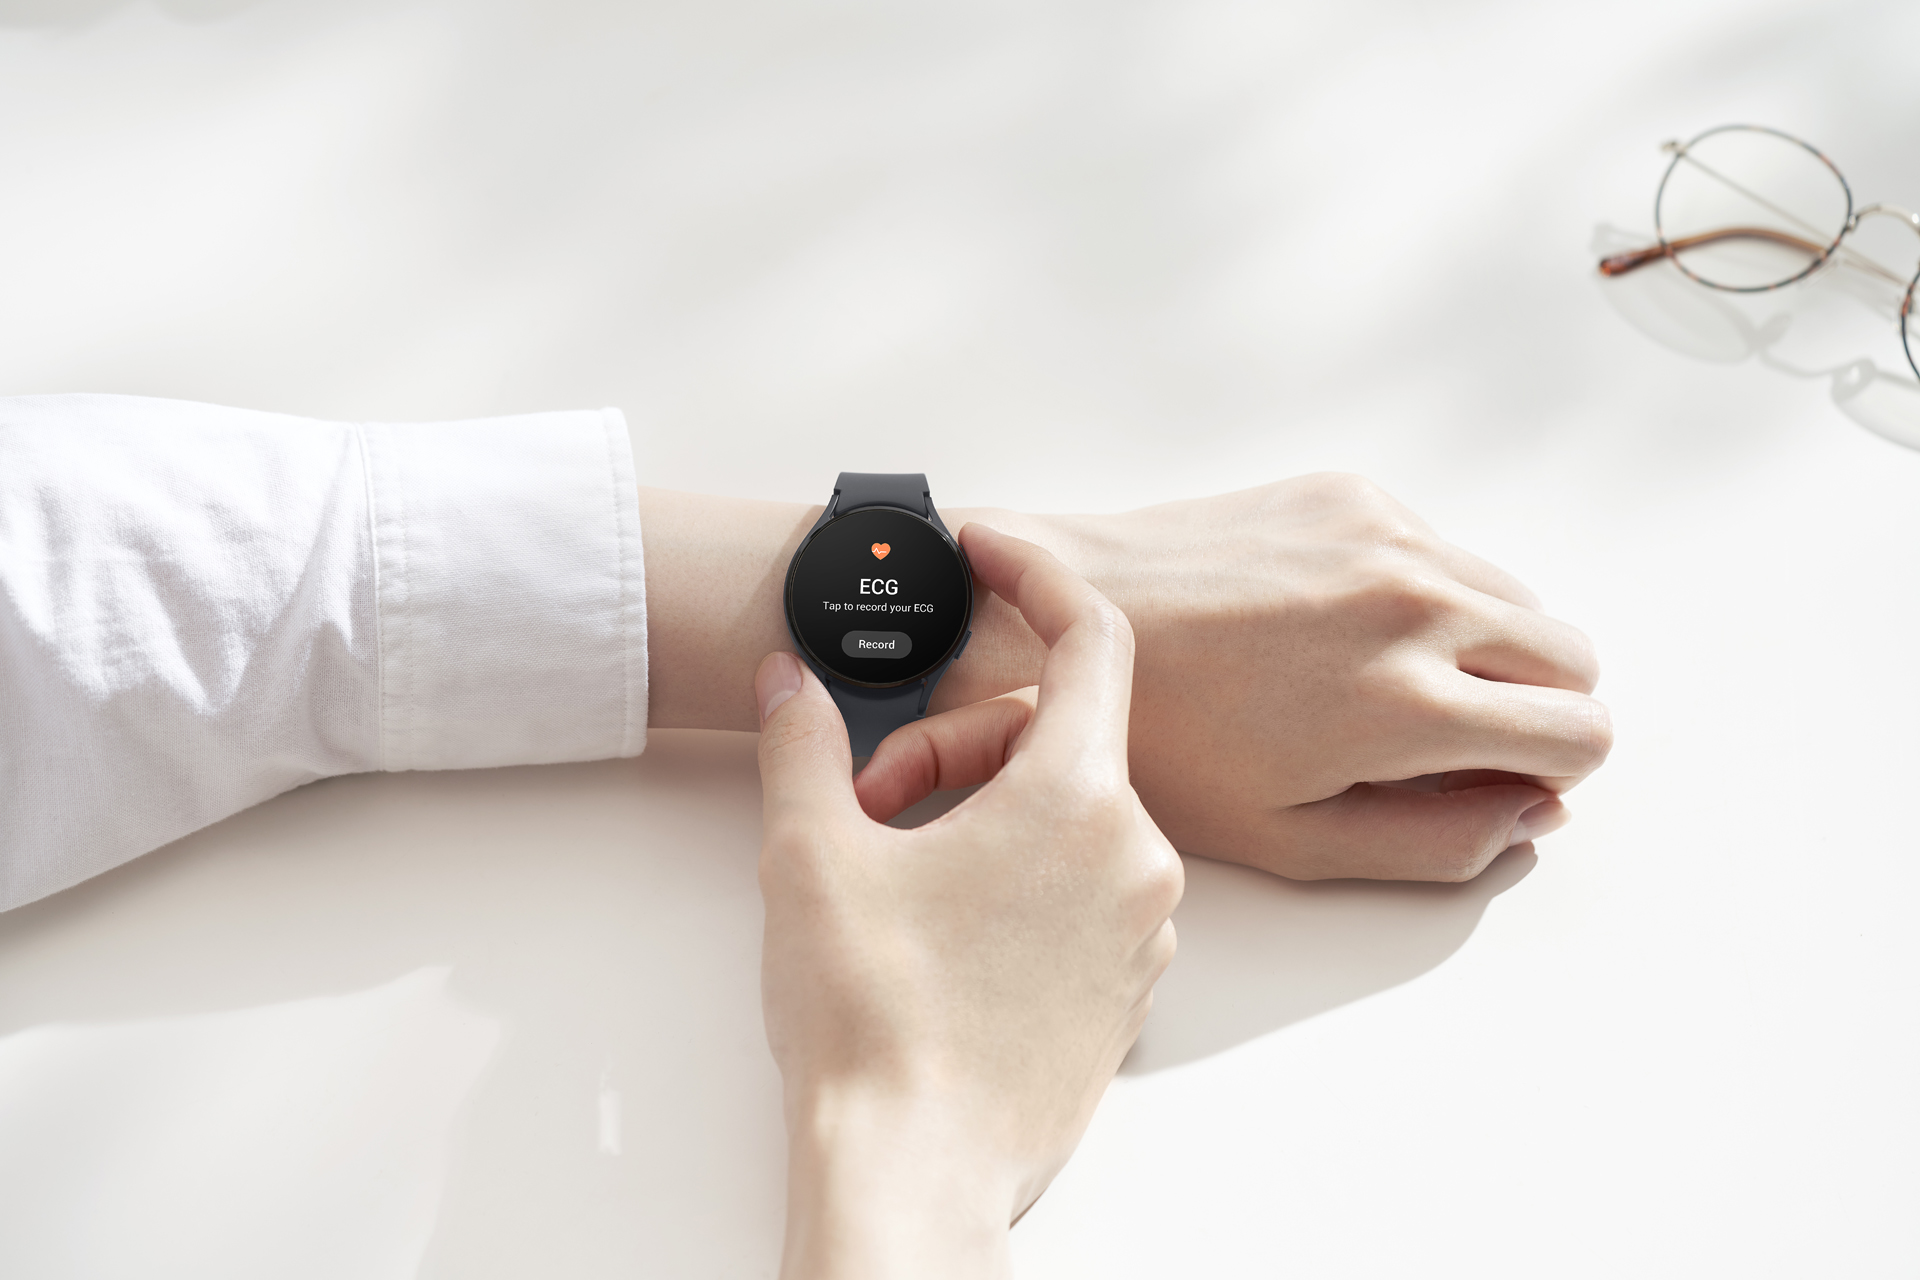 Notificación de ritmo cardiaco irregular, la nueva función de Samsung en Galaxy Watch